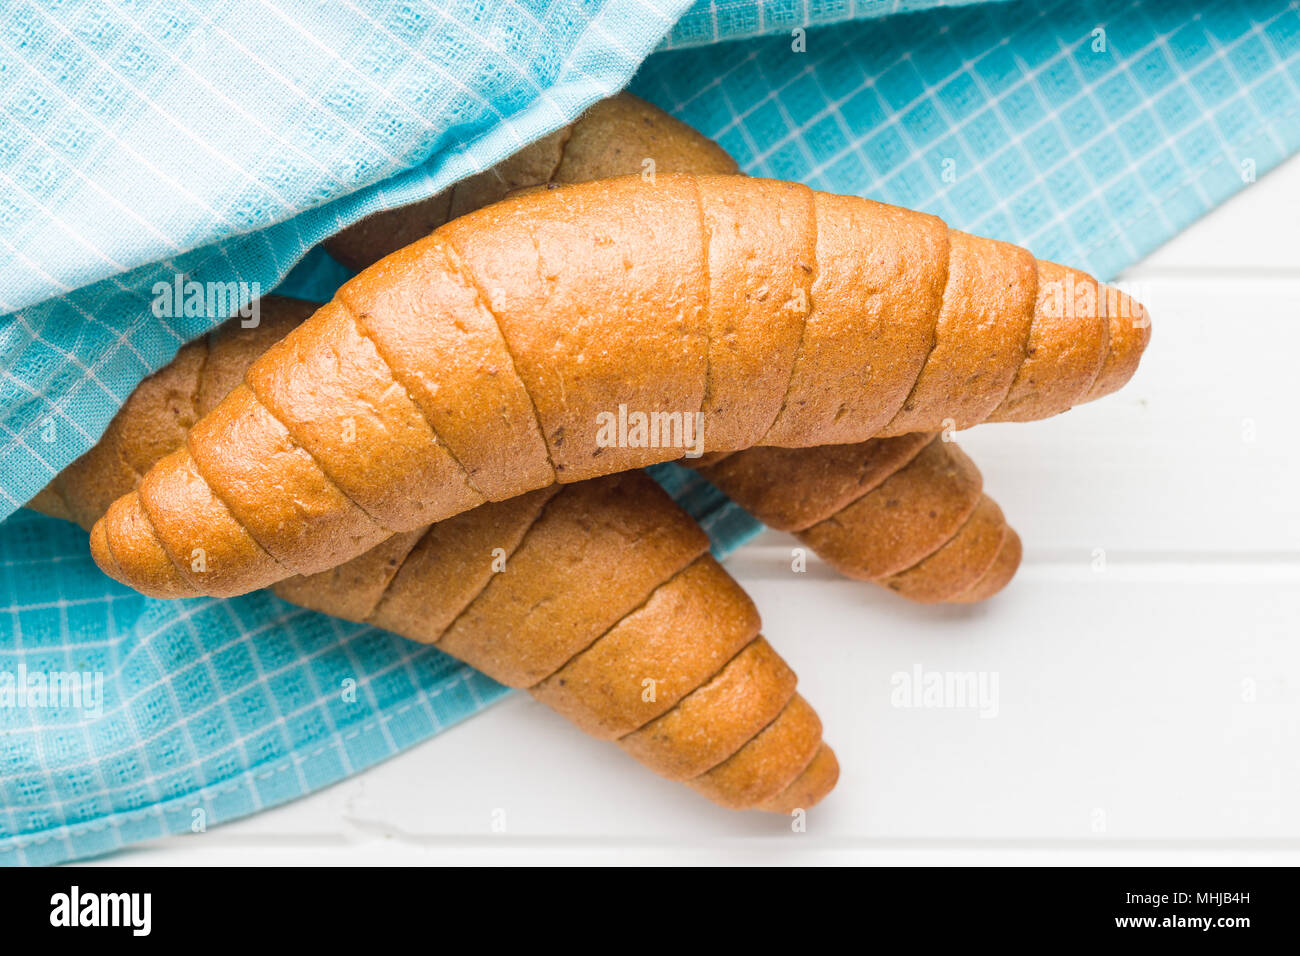 Petits pains salés. La farine complète croissants sur une serviette à carreaux. Banque D'Images